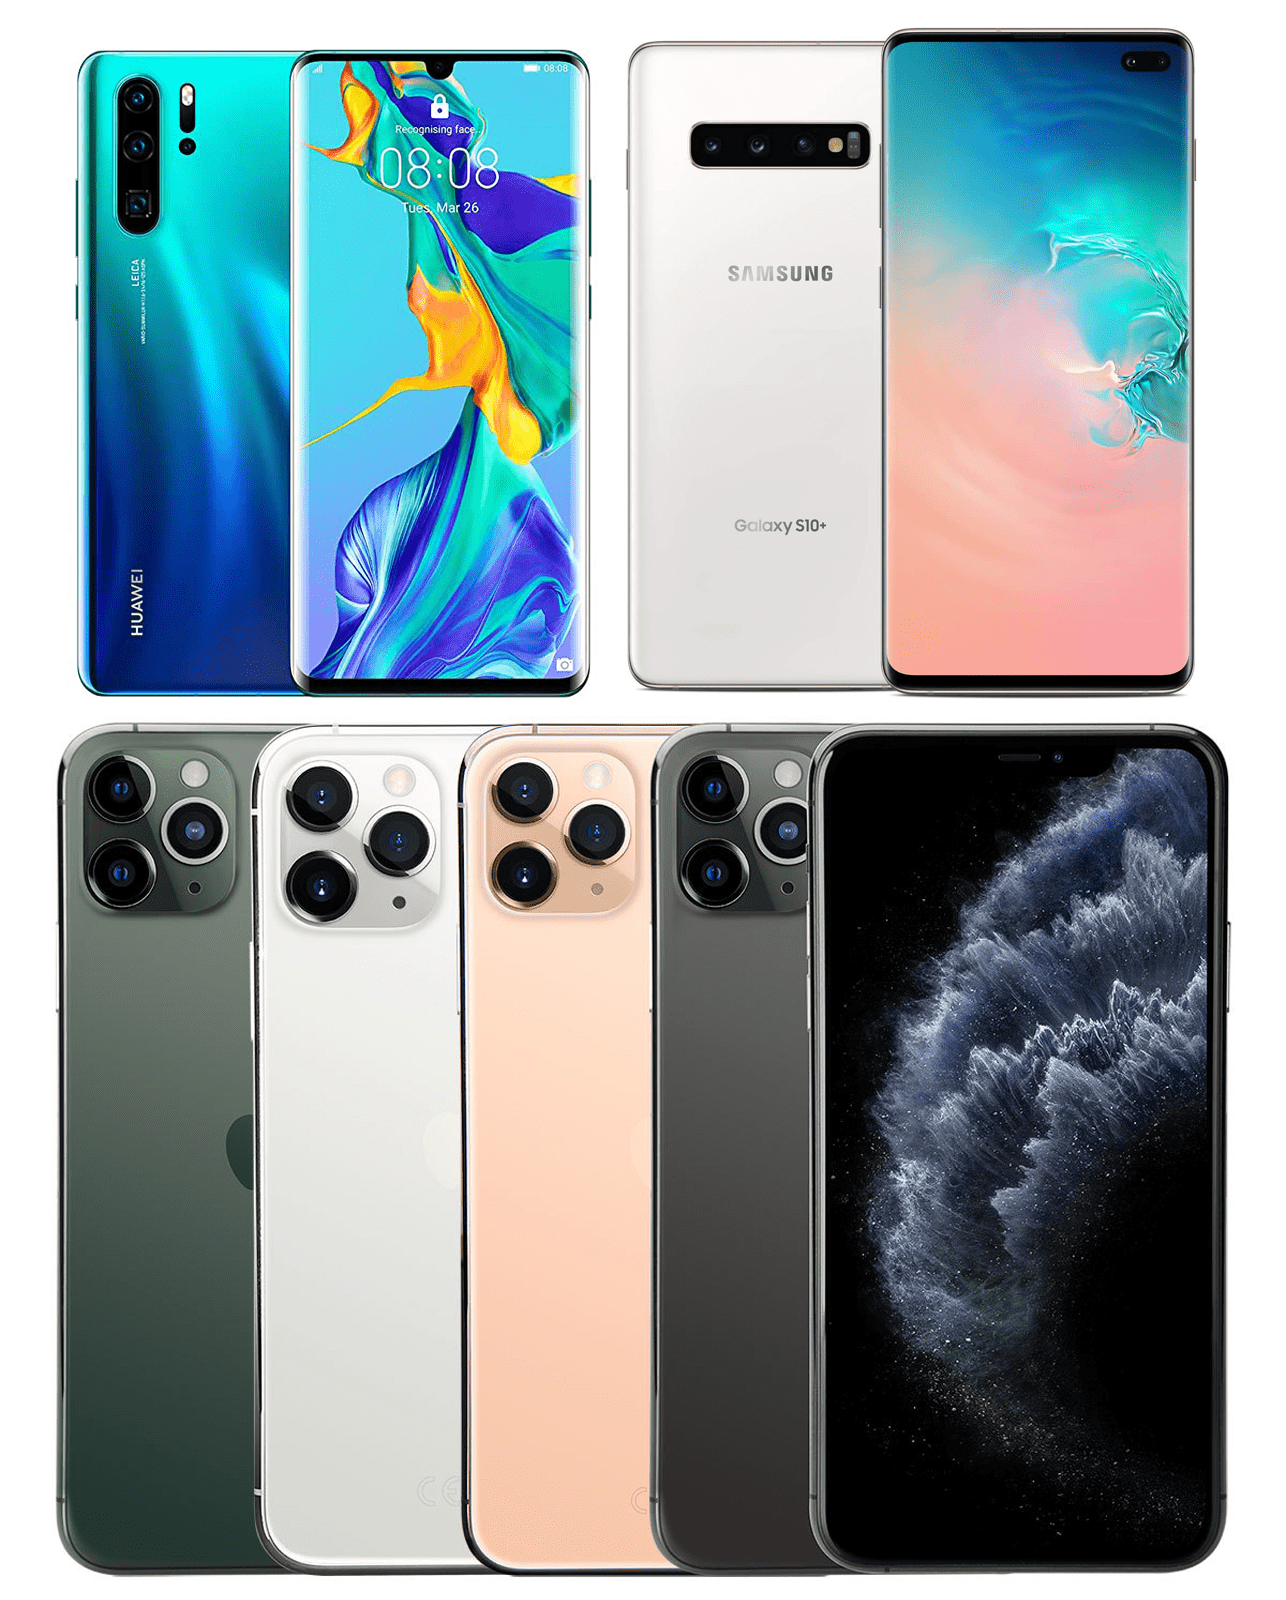 Top 5 Smartphones of the Year 2019